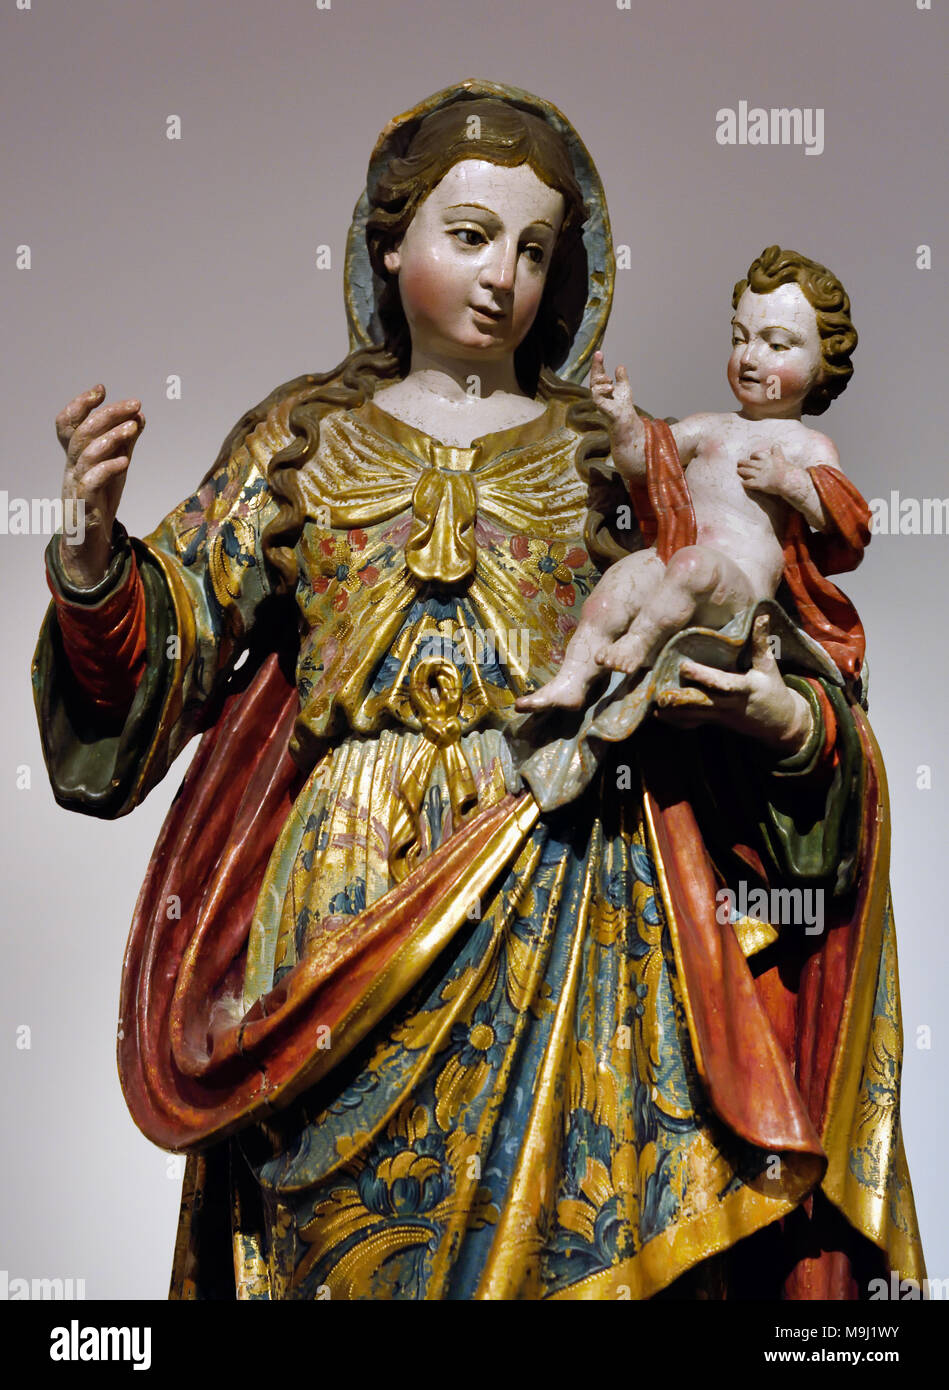 La Madonna del Rosario del XVIII secolo portoghese Portogallo Coimbra ( Convento de Santa Teresa - Convento di Santa Teresa ) Foto Stock